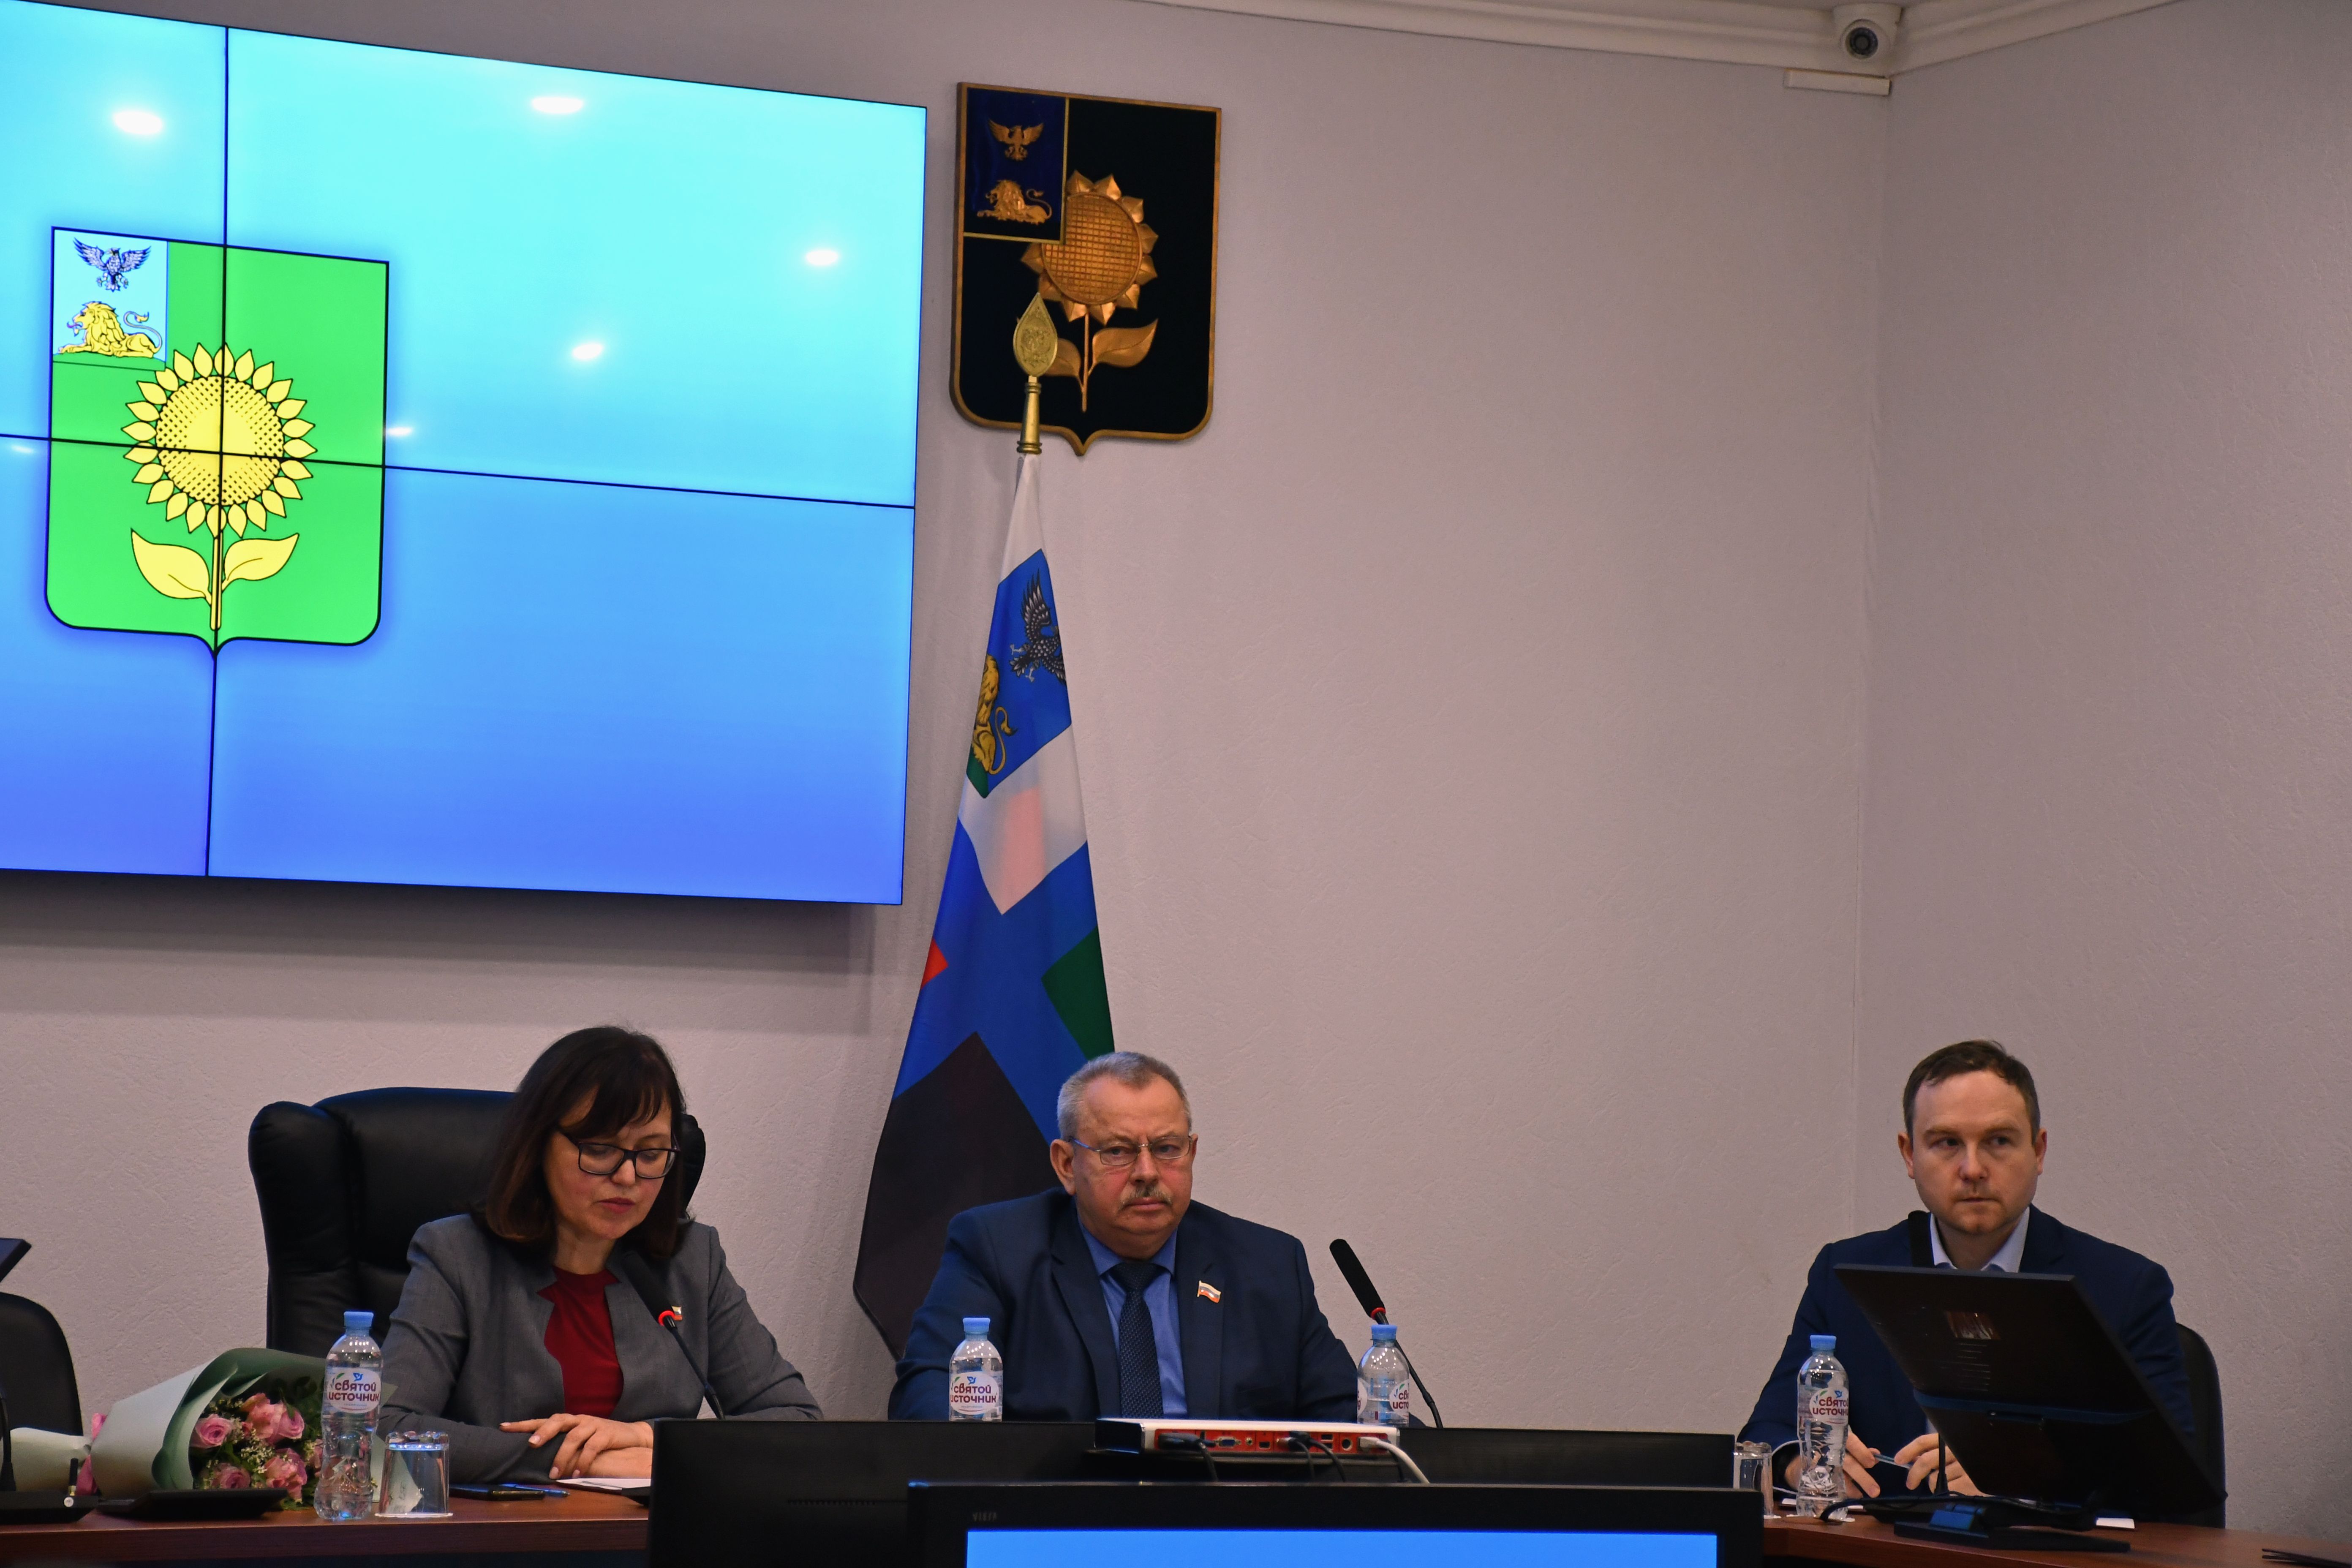 Сегодня, 31 января состоялось пятидесятое внеочередное заседание Совета депутатов.